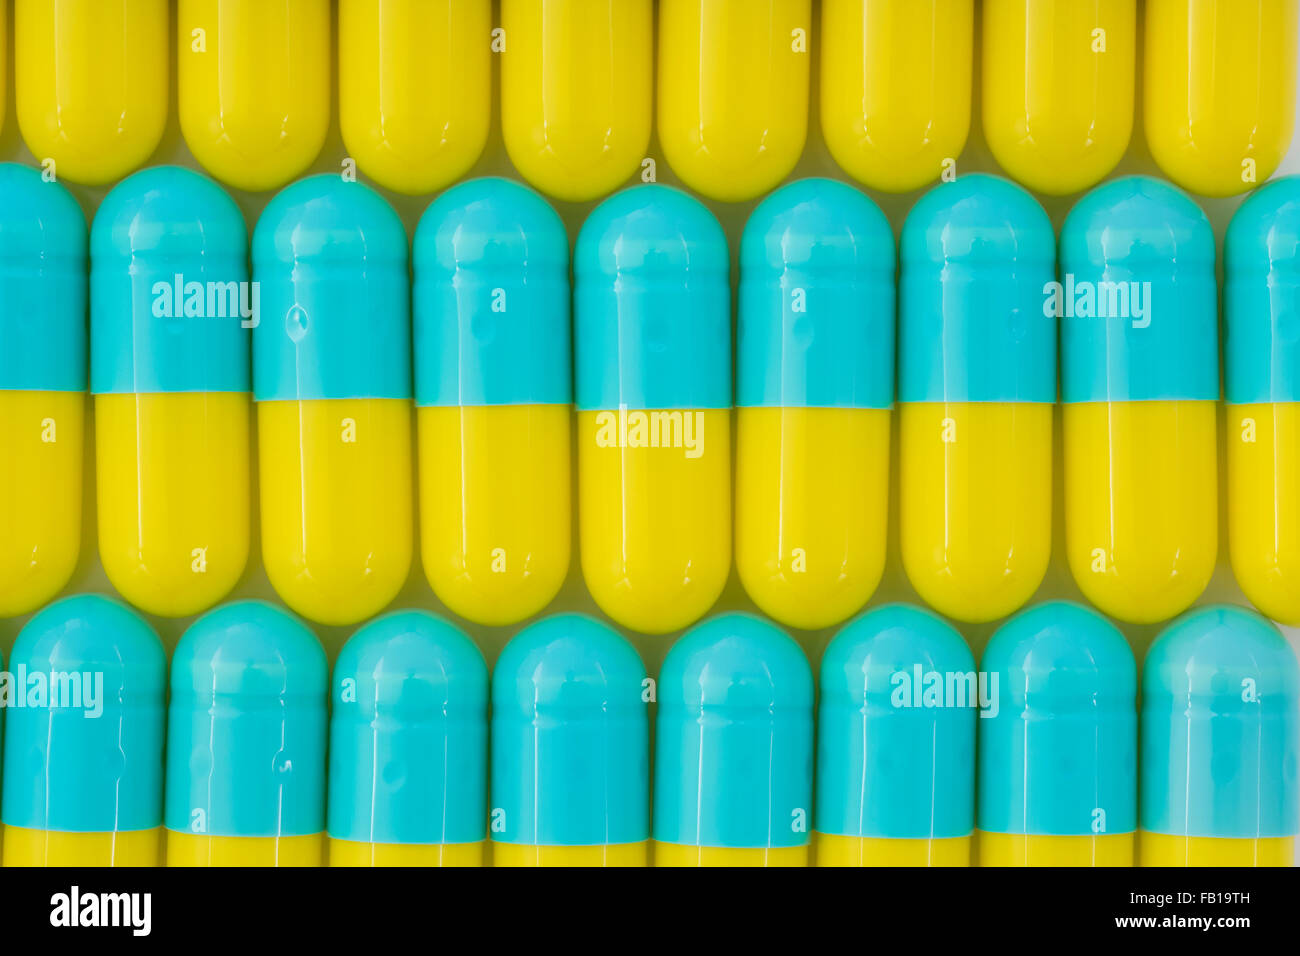 Primer plano de pastillas - forma de cápsula hecha de gelatina.Amarillo / Azul pastillas. Metáfora tomando a las compañías farmacéuticas estadounidenses sobre los altos precios de los medicamentos, ensayos de drogas. Foto de stock